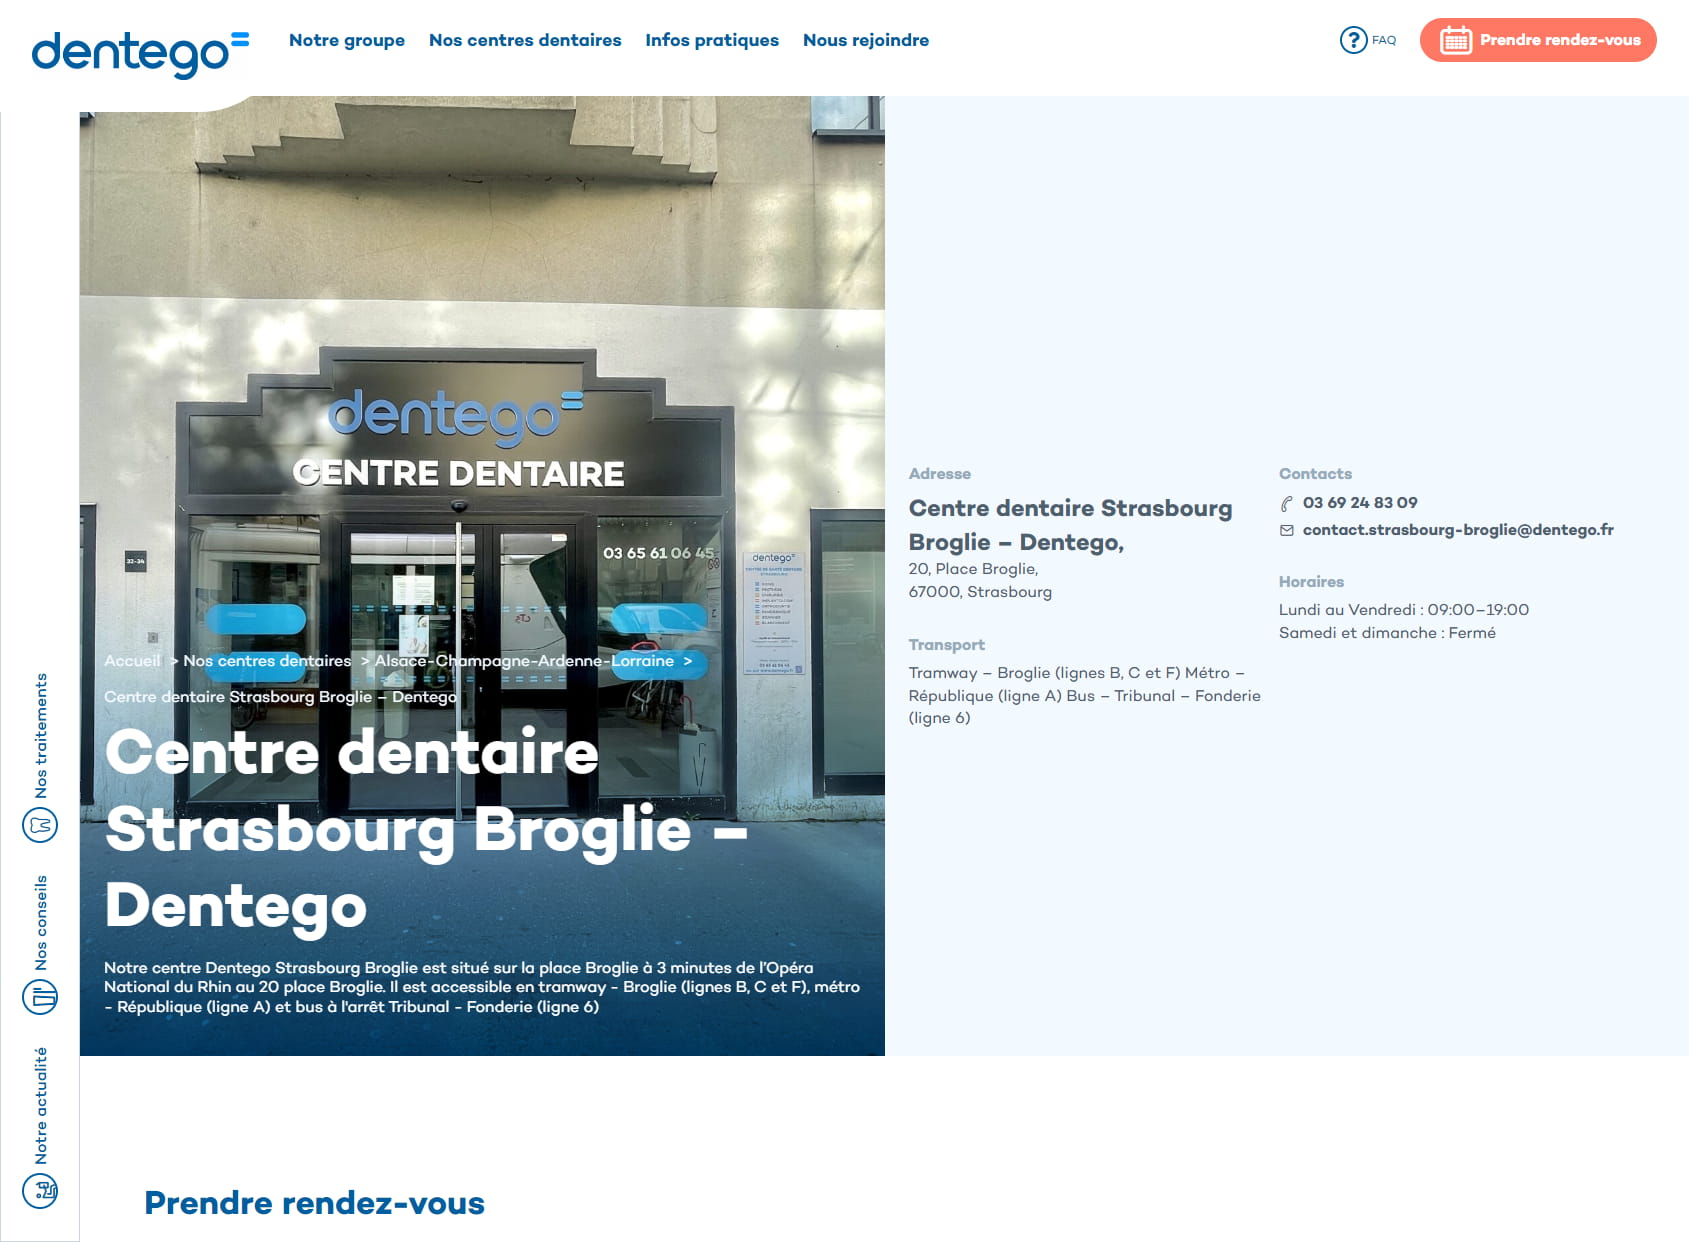 Centre Dentaire Strasbourg Broglie : Dentiste et Cabinet d'orthodontie Strasbourg - Dentego